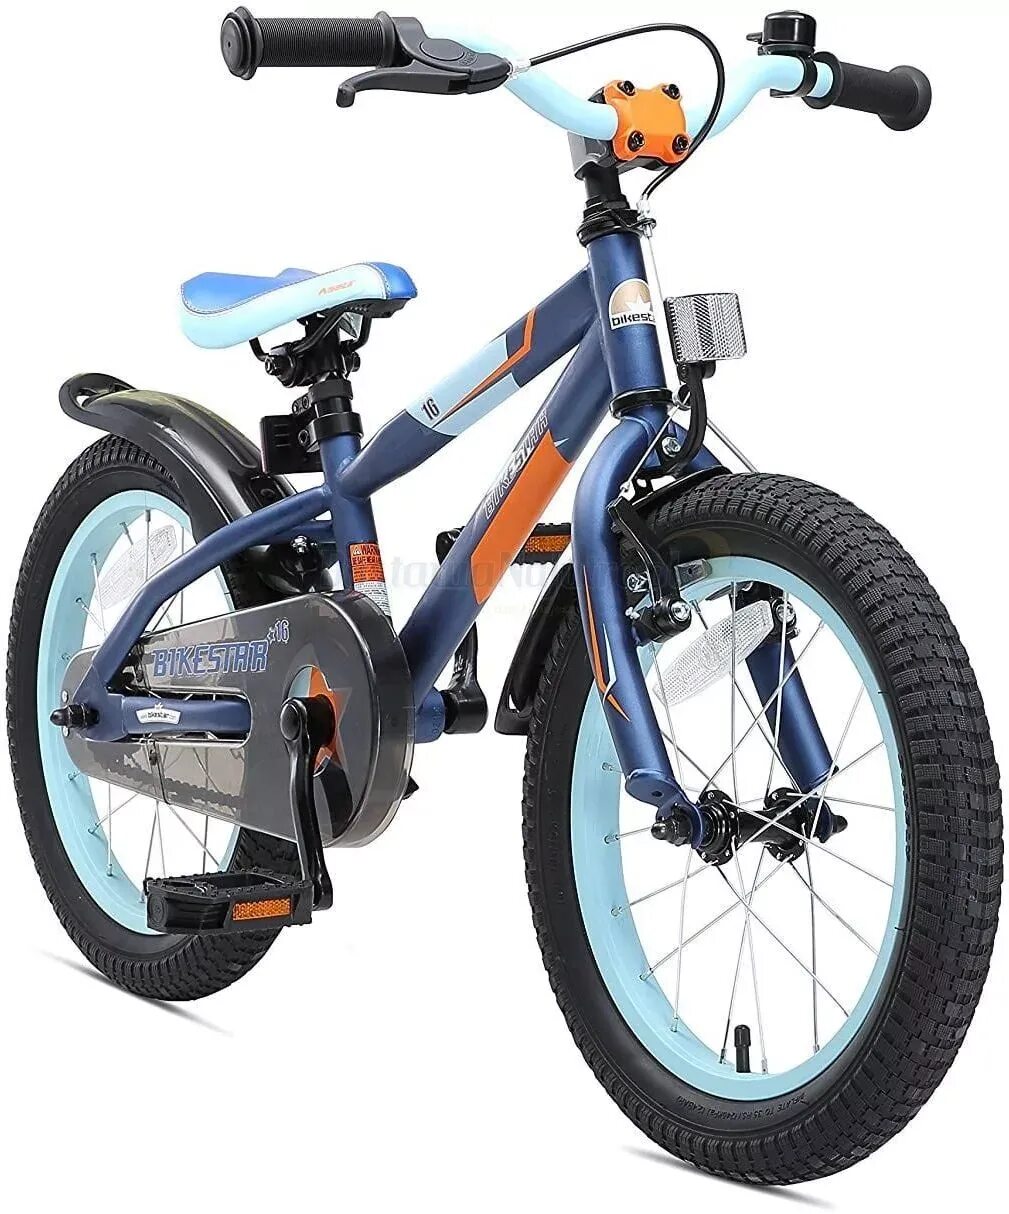 Рейтинг велосипедов для мальчиков. Велосипед Bikestar. Детские велосипеды от 5 лет мальчику. Детский велосипед от 3 лет для мальчика. Велосипед детский 4 года мальчику.